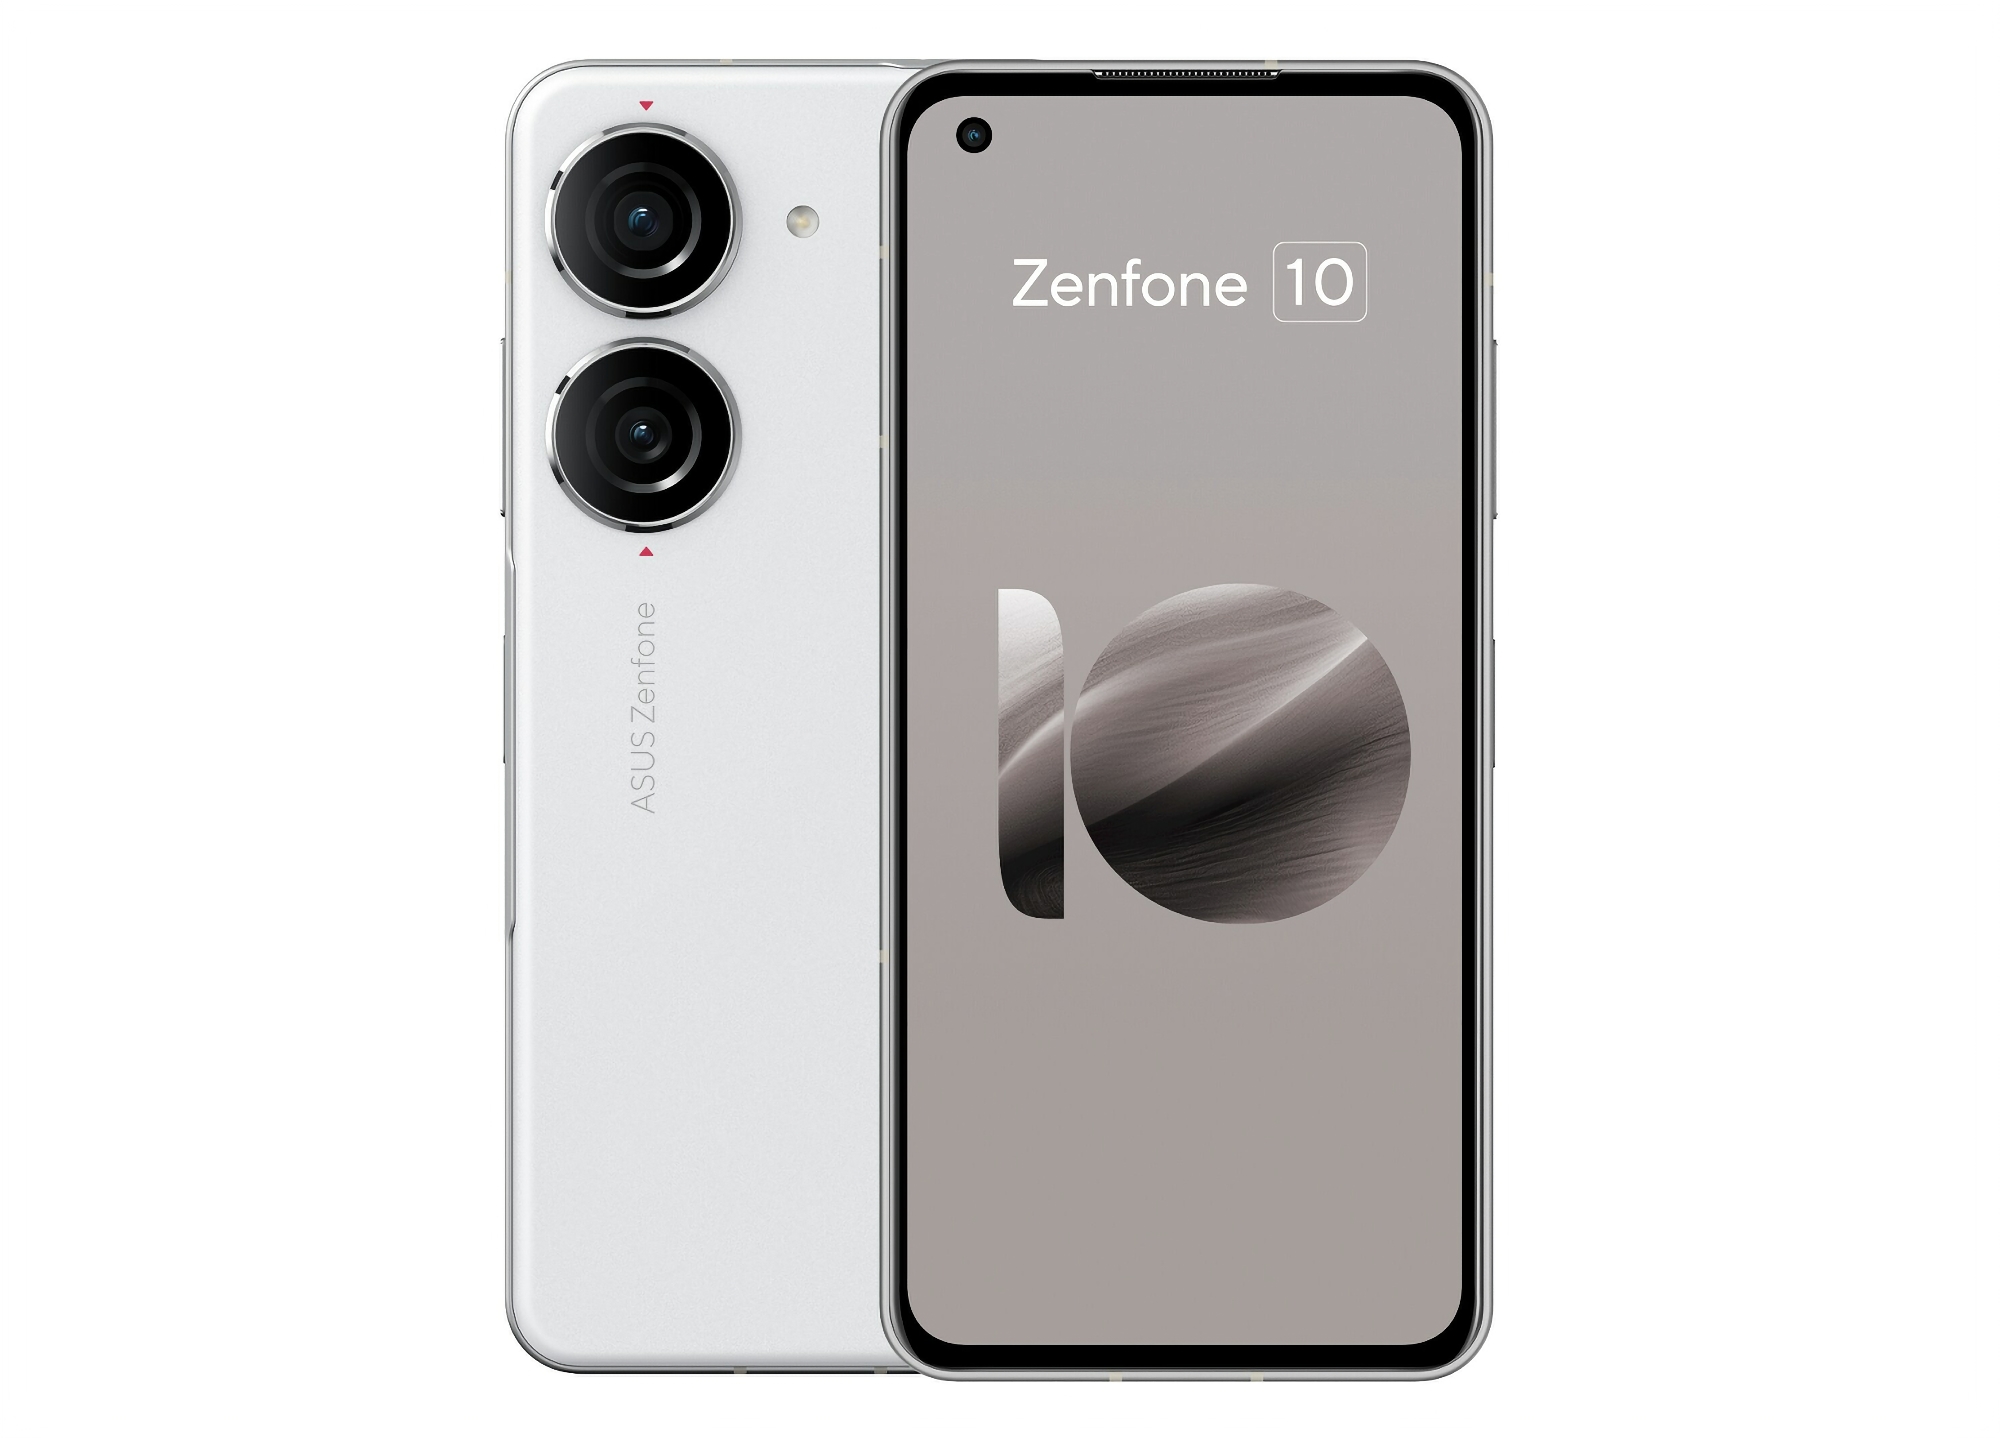 Insider avslører utseende, spesifikasjoner og pris på ASUS Zenfone 10-smarttelefonen